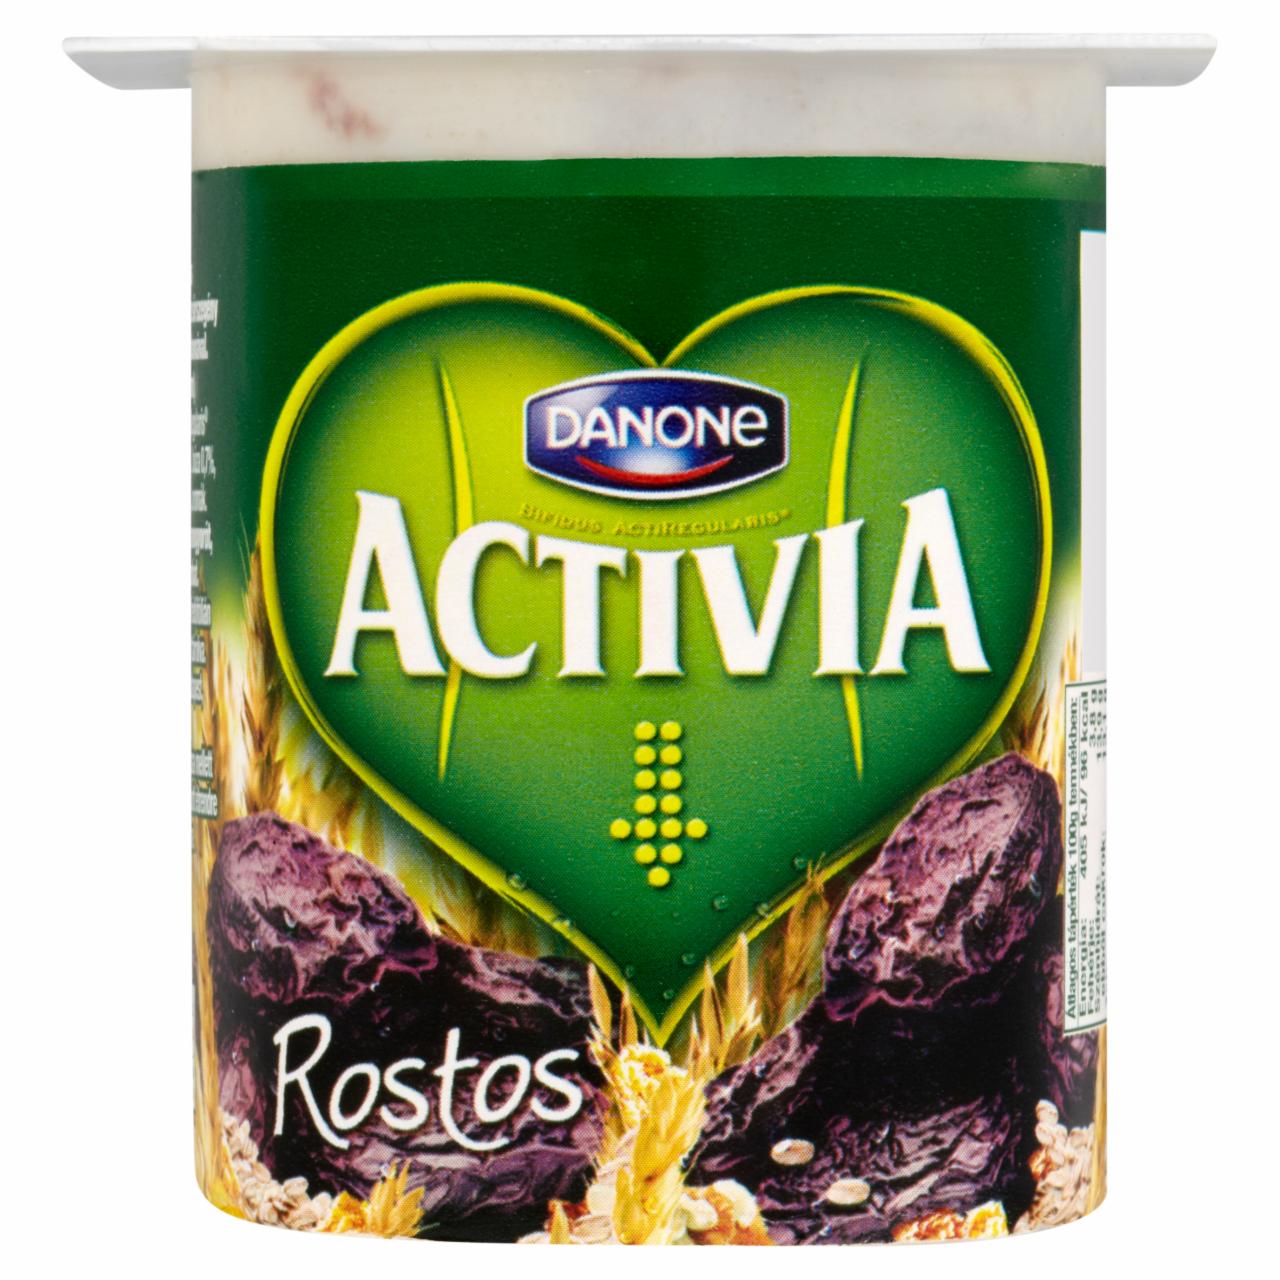 Képek - Danone Activia rostos, élőflórás, zsírszegény joghurt aszalt szilvával és gabonával 125 g